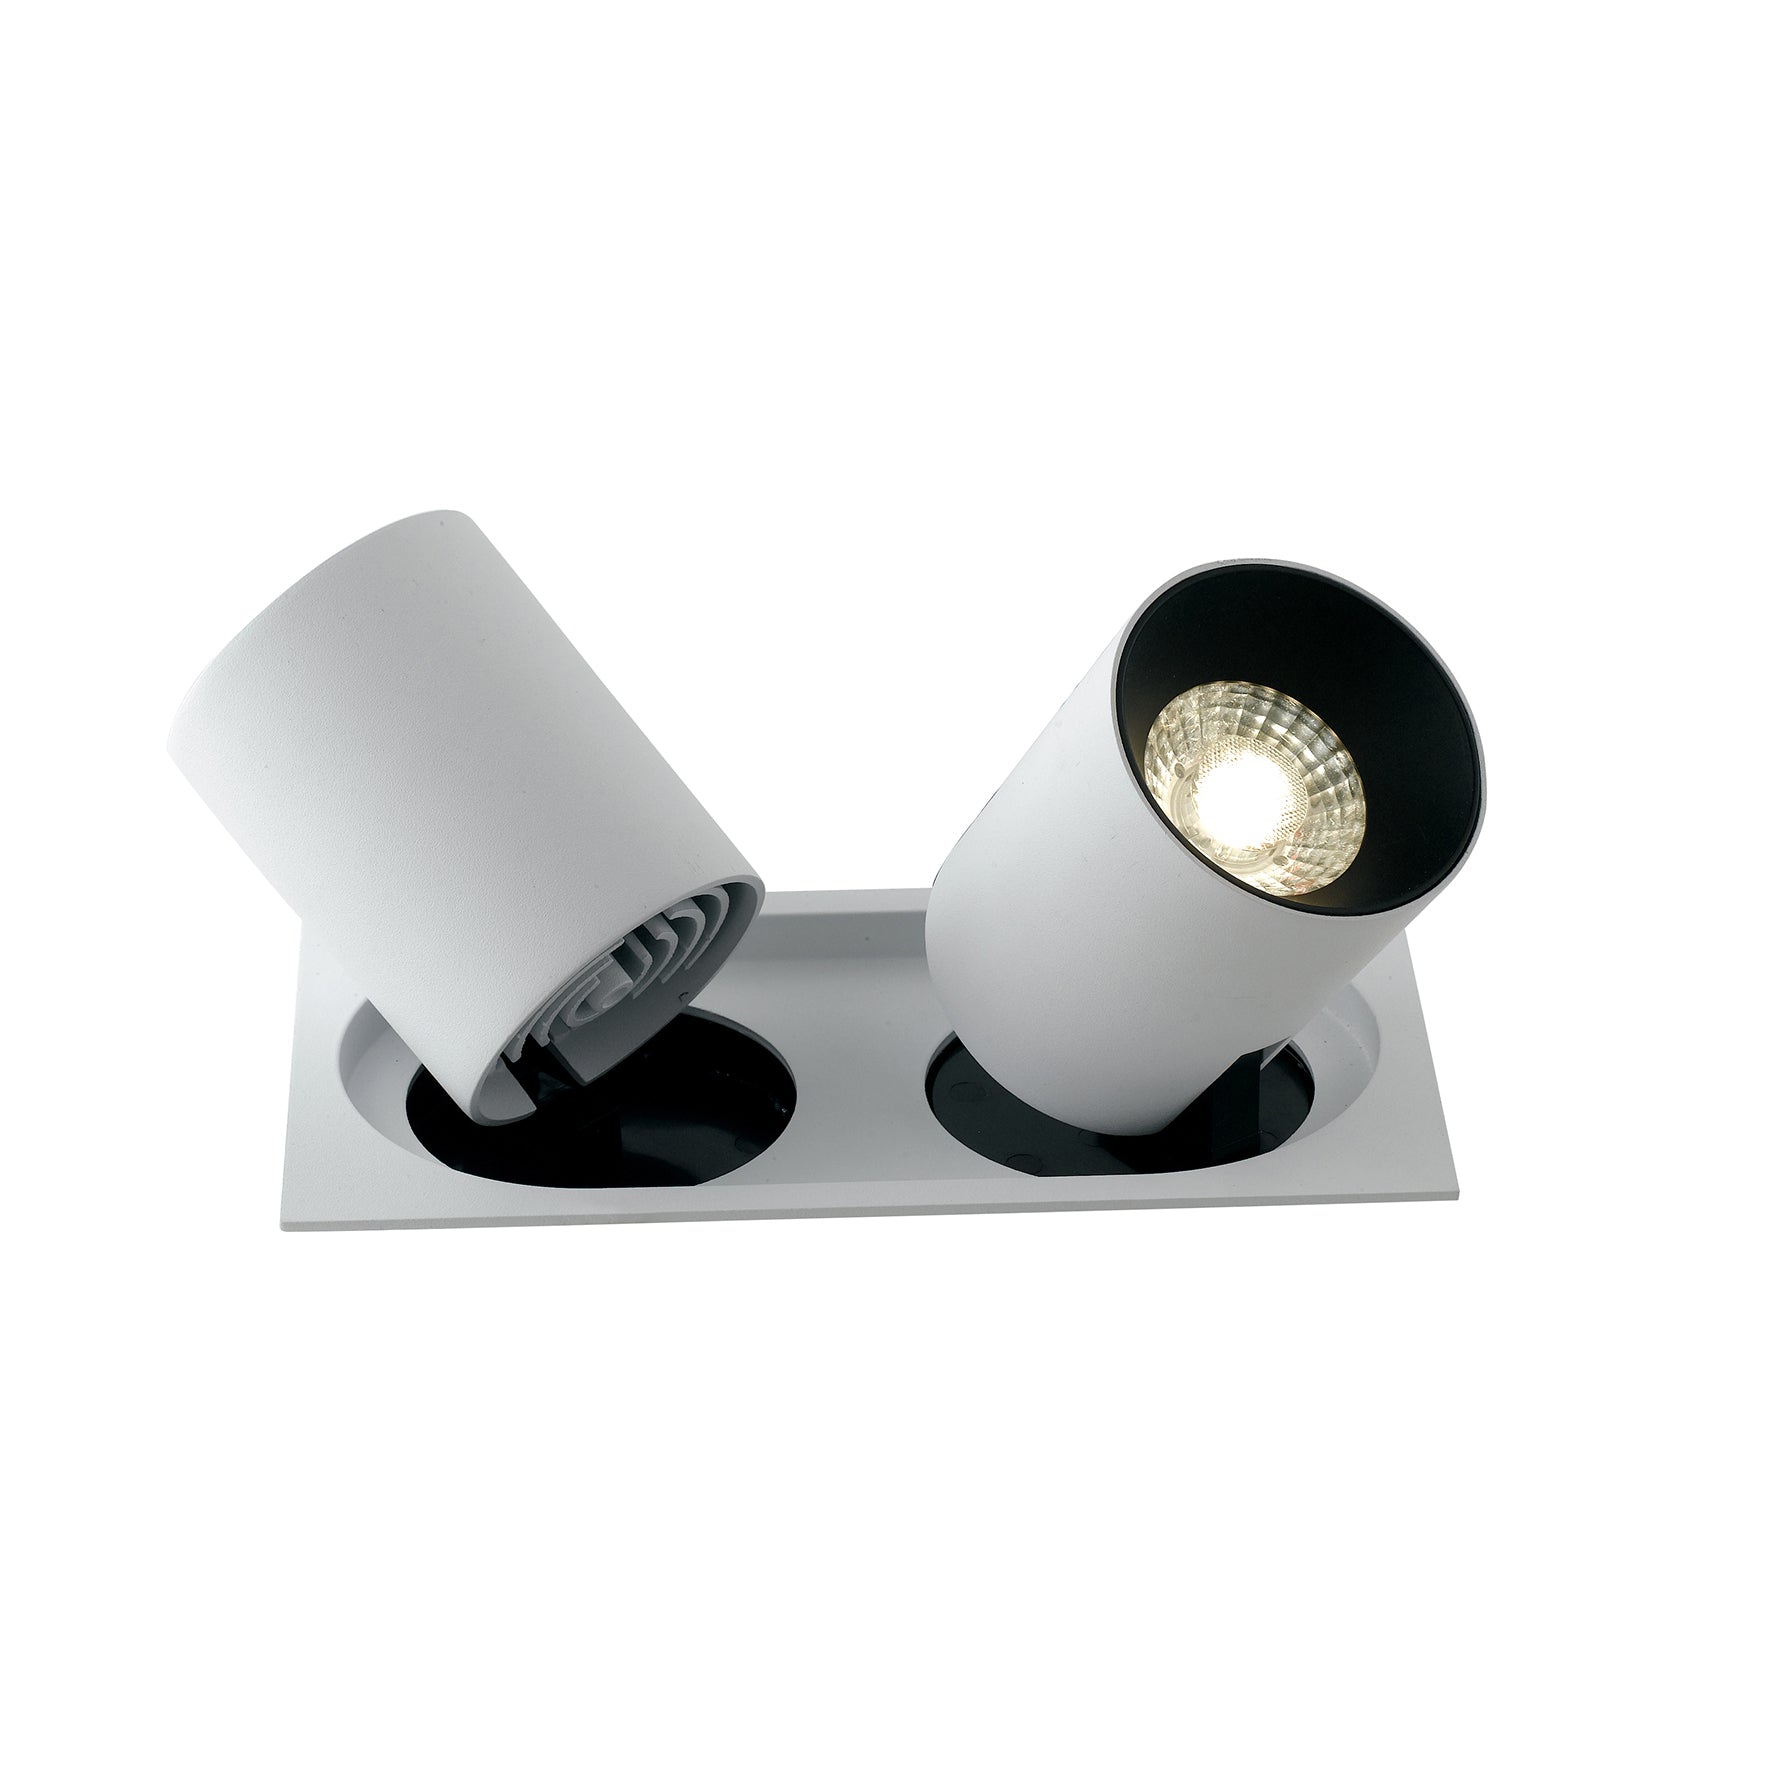 Luminaire encastré LED OUTSIDER avec spot et tête extractible et orientable 15W